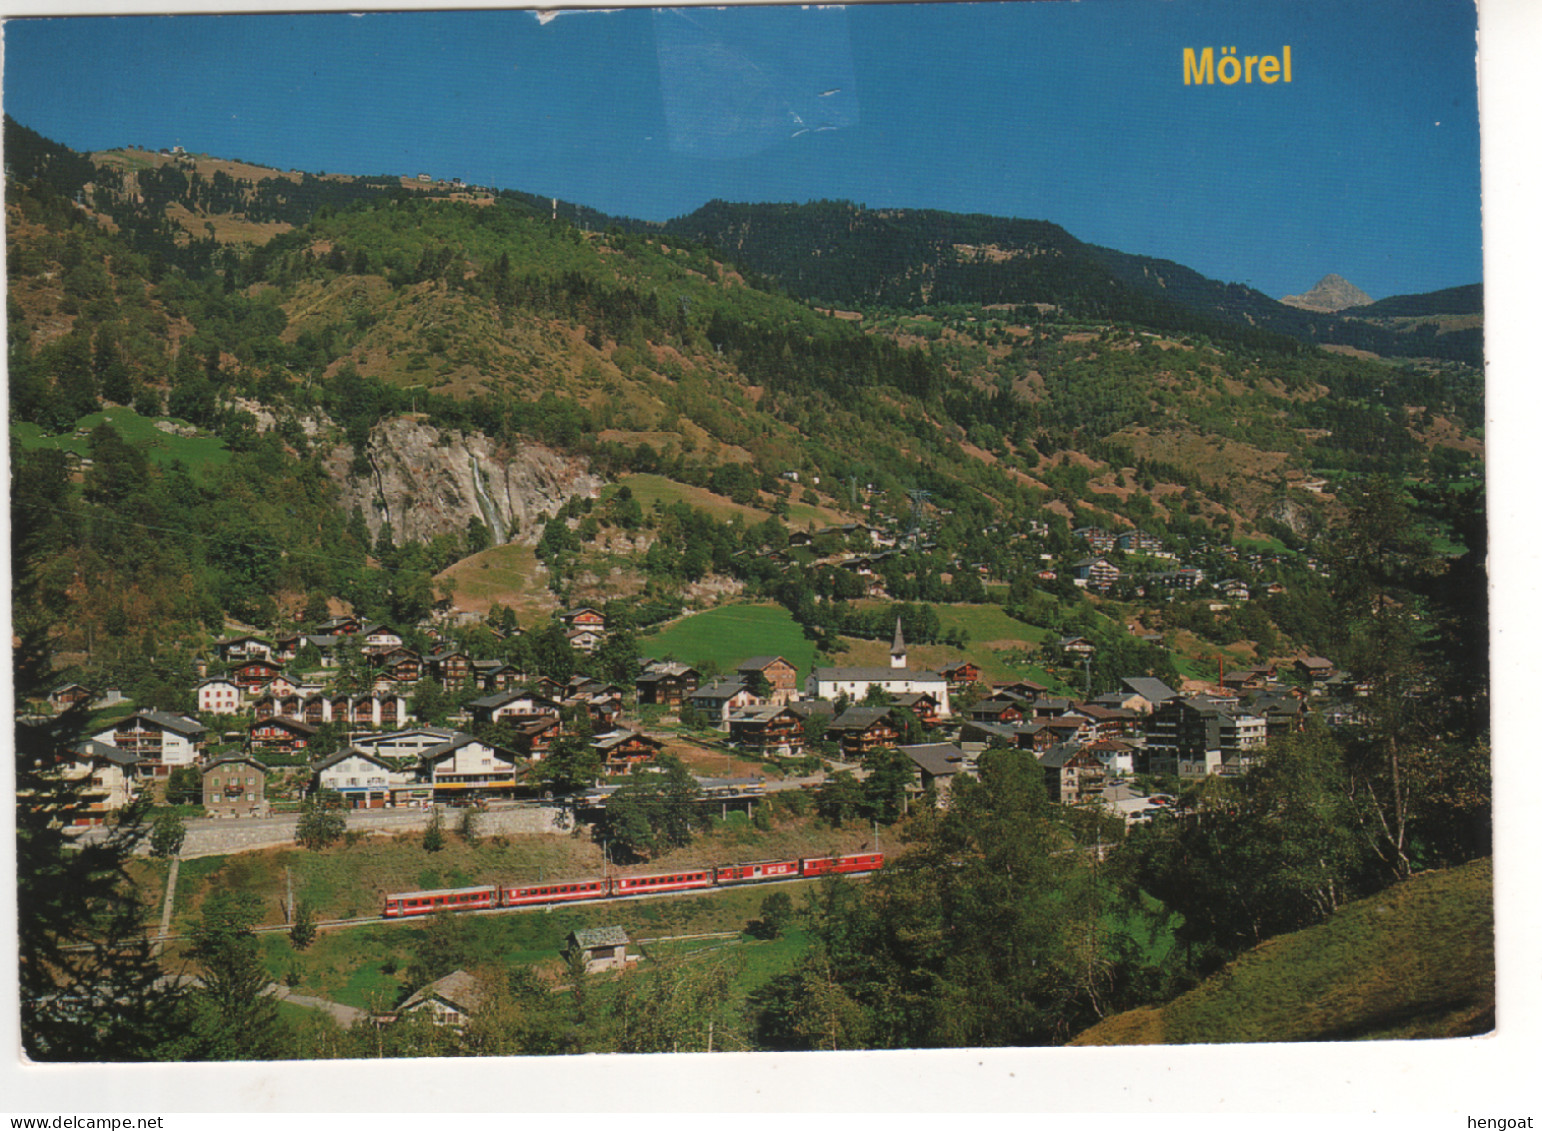 Timbre , Stamp " EUROPA : Zoodiaque , Taureau " Sur CP , Carte , Postcard Du 10/08/95 - Lettres & Documents